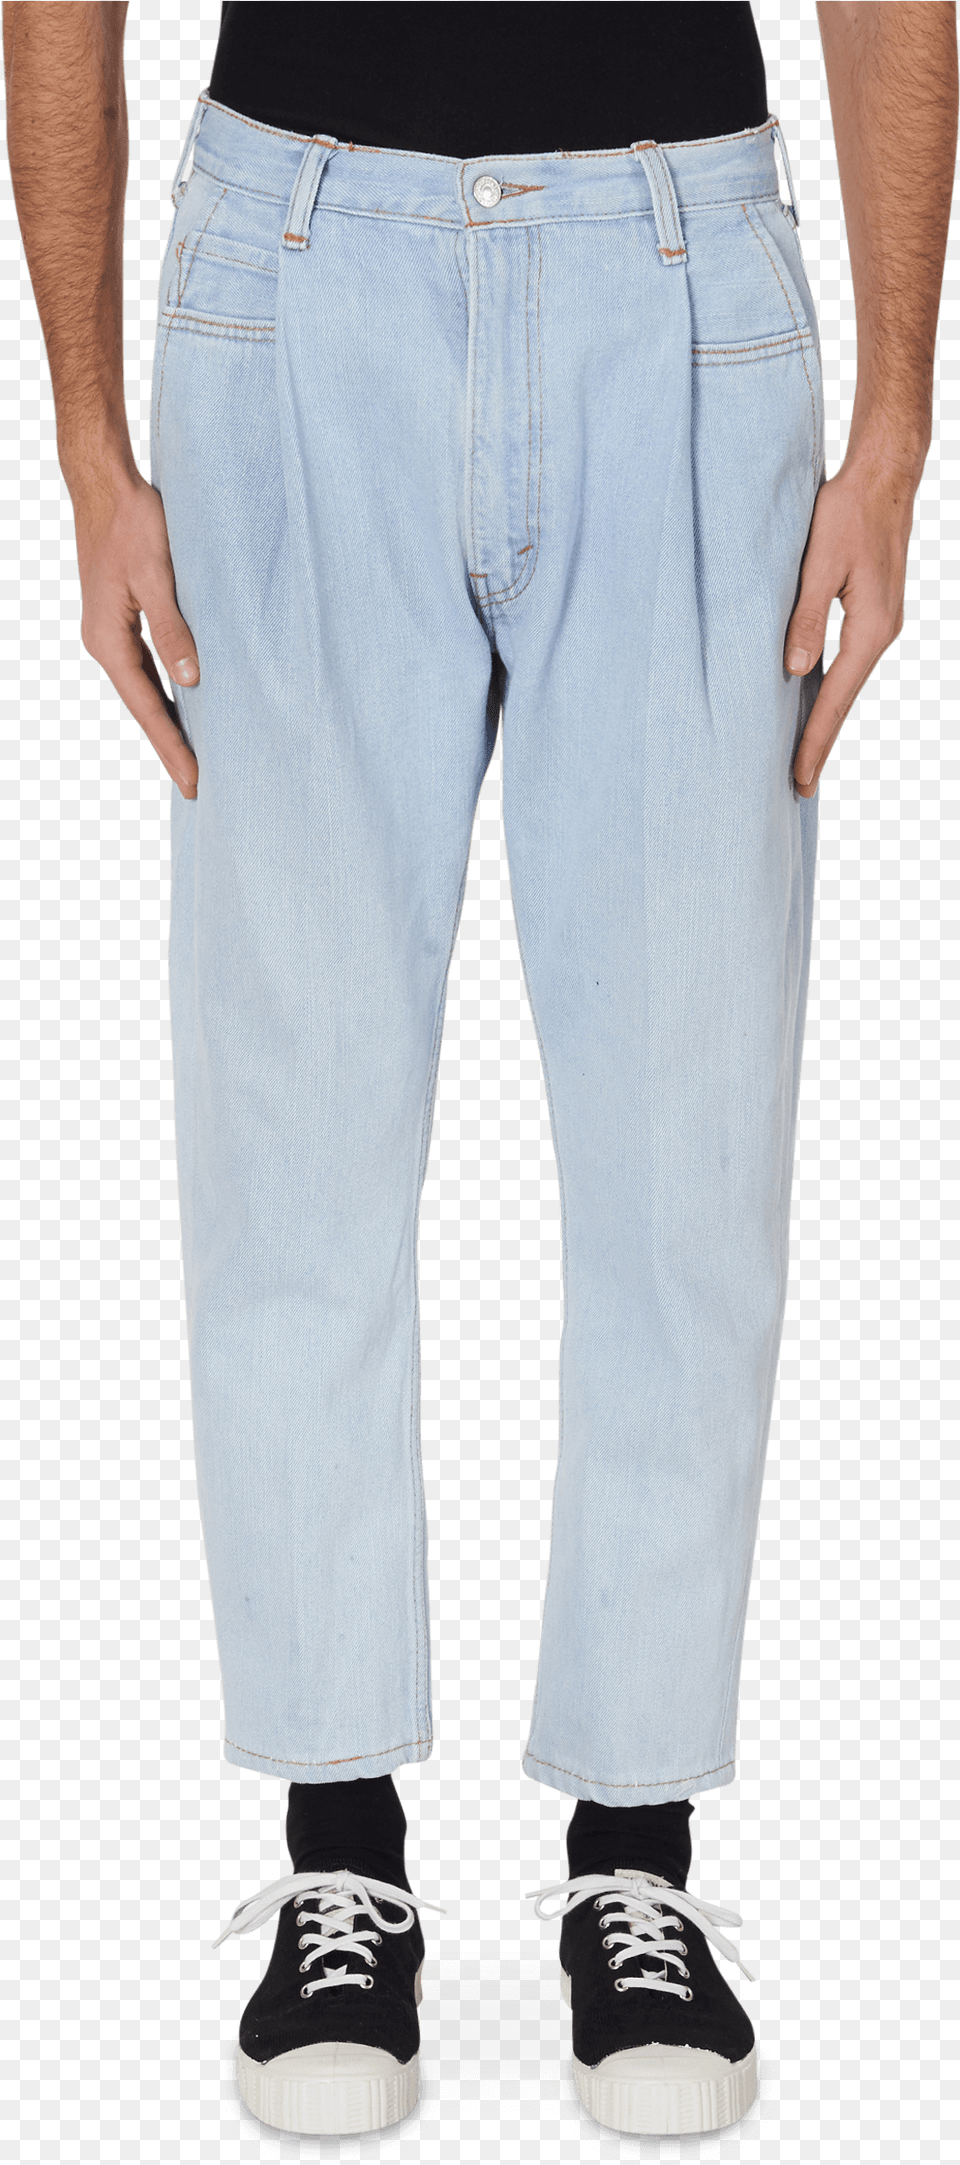 Denim Pants Reused Denim Hi Res Pocket, Clothing, Footwear, Jeans, Shoe Free Transparent Png